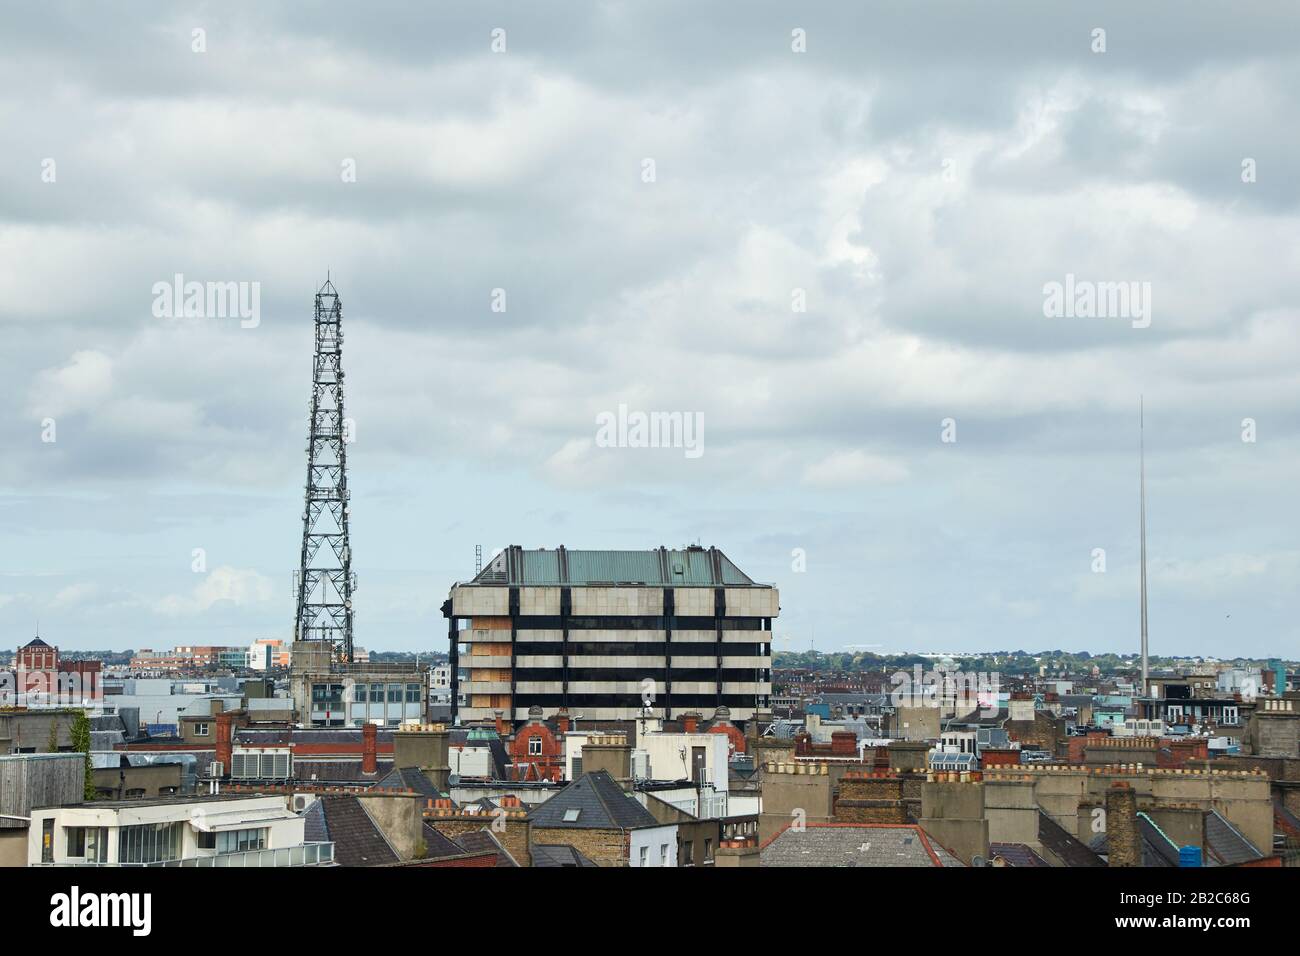 The city of Dublin, Ireland Stock Photo